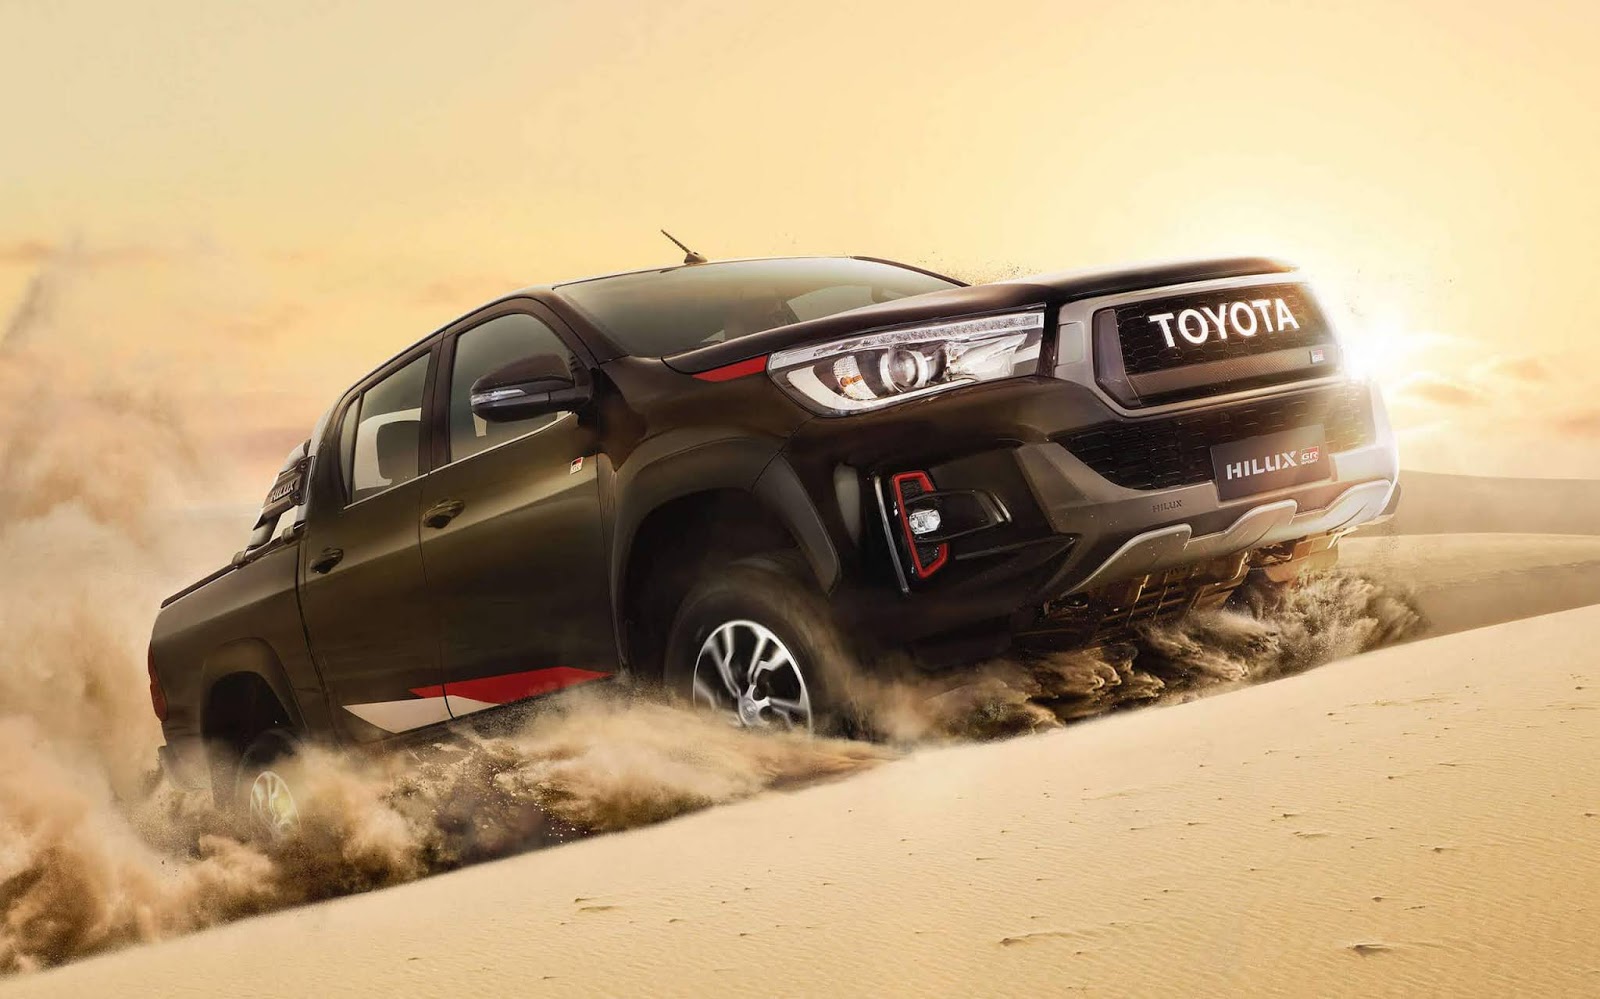 Toyota Hilux Gr S 2020 Fotos Preços E Detalhes Triauto Veículos